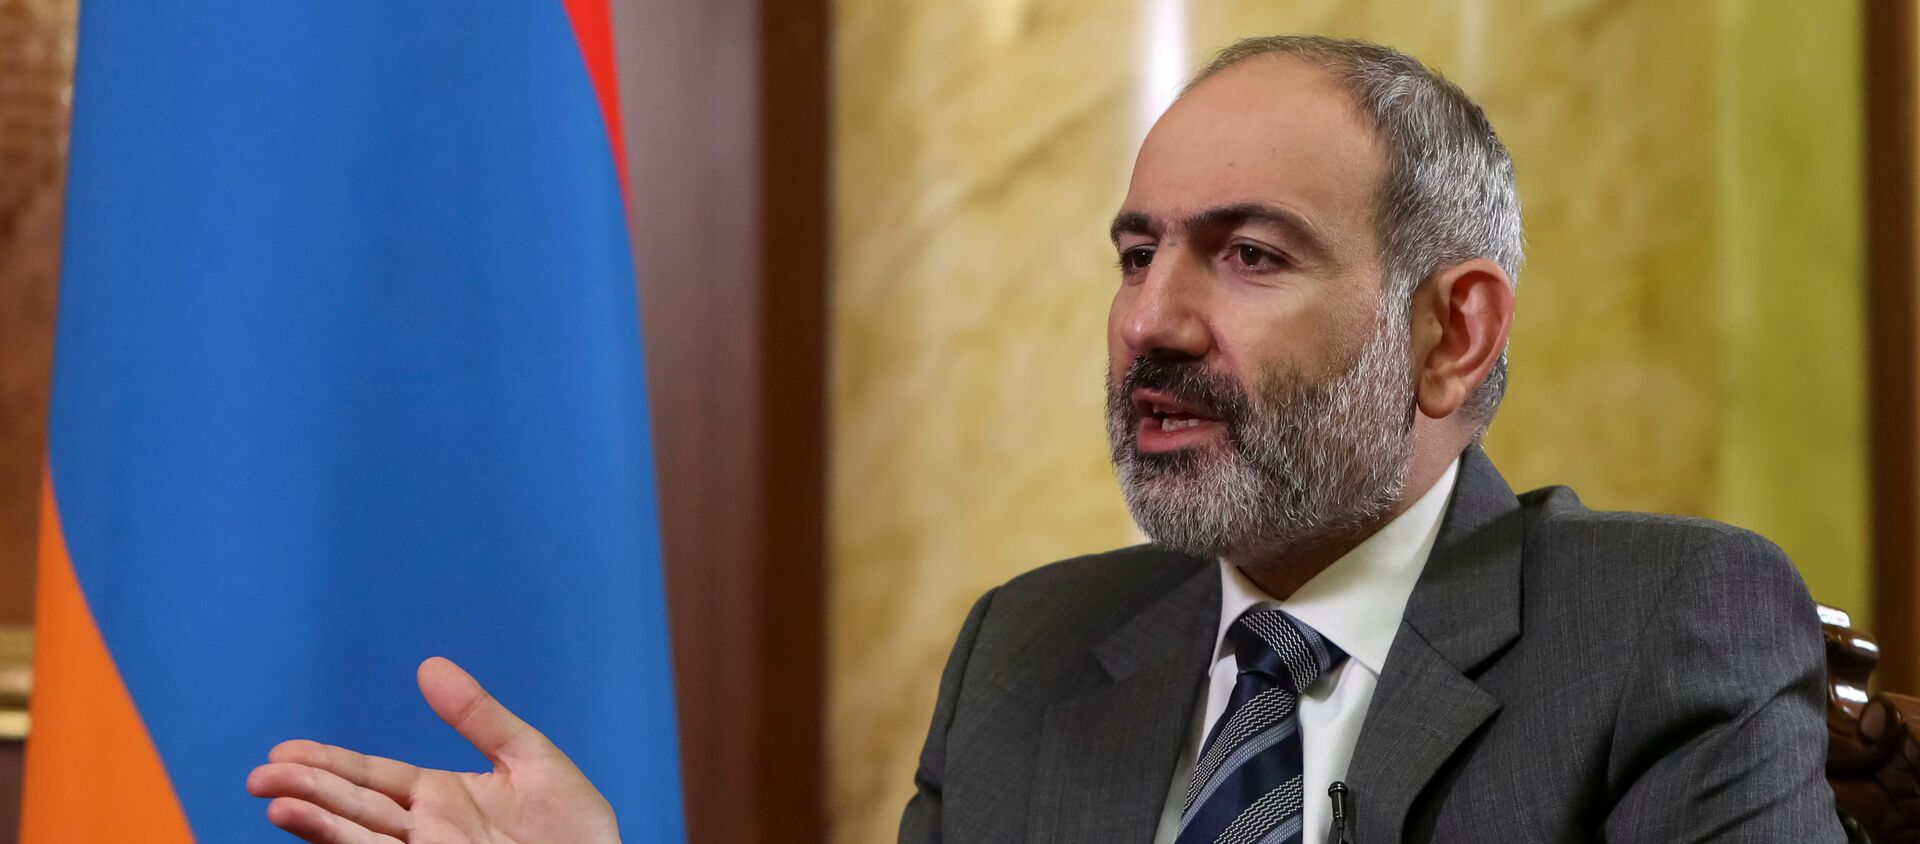 Thủ tướng Armenia Nikol Pashinyan trong cuộc phỏng vấn với Reuters ở Yerevan, Armenia - Sputnik Việt Nam, 1920, 15.05.2021